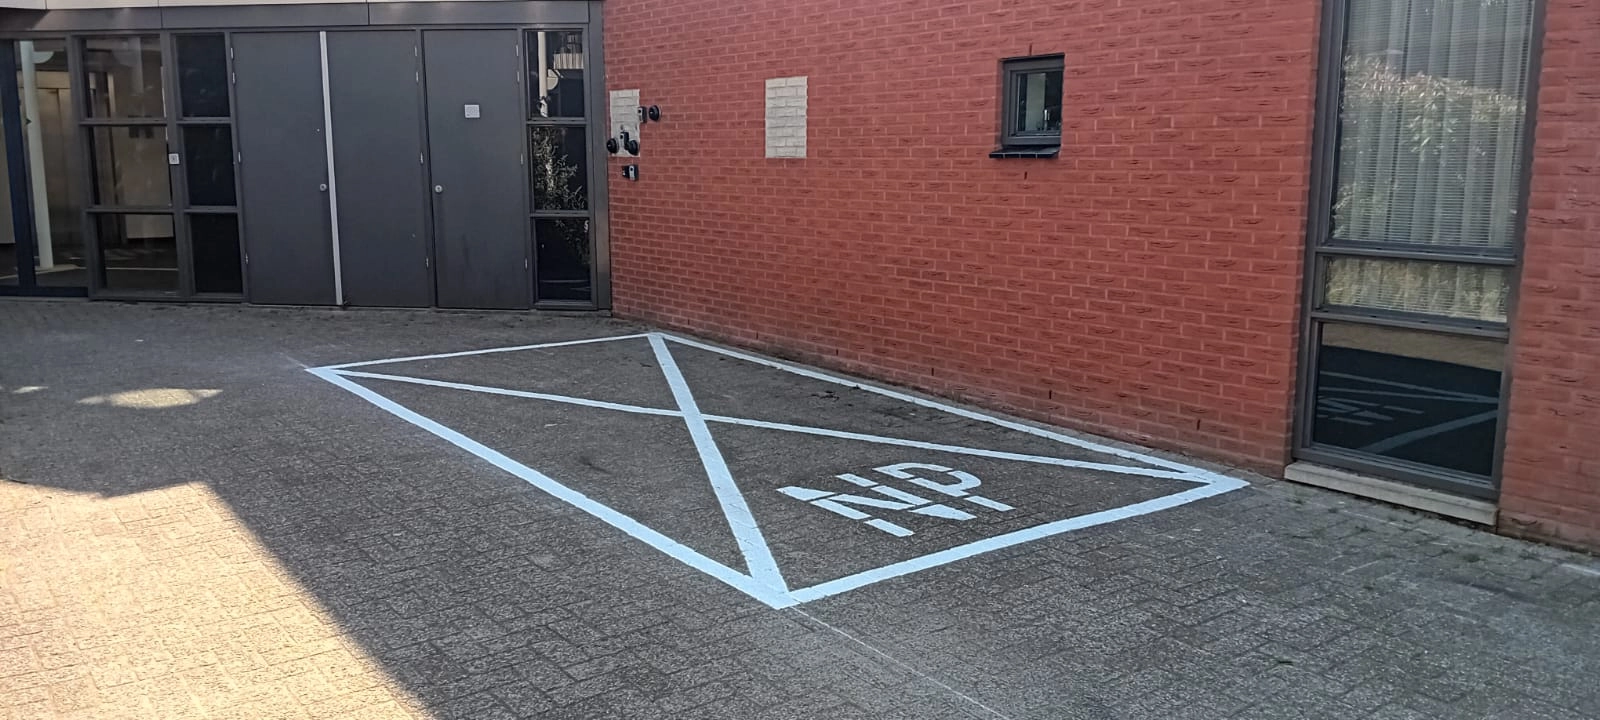 niet-parkeren-kruis-markering-belijning